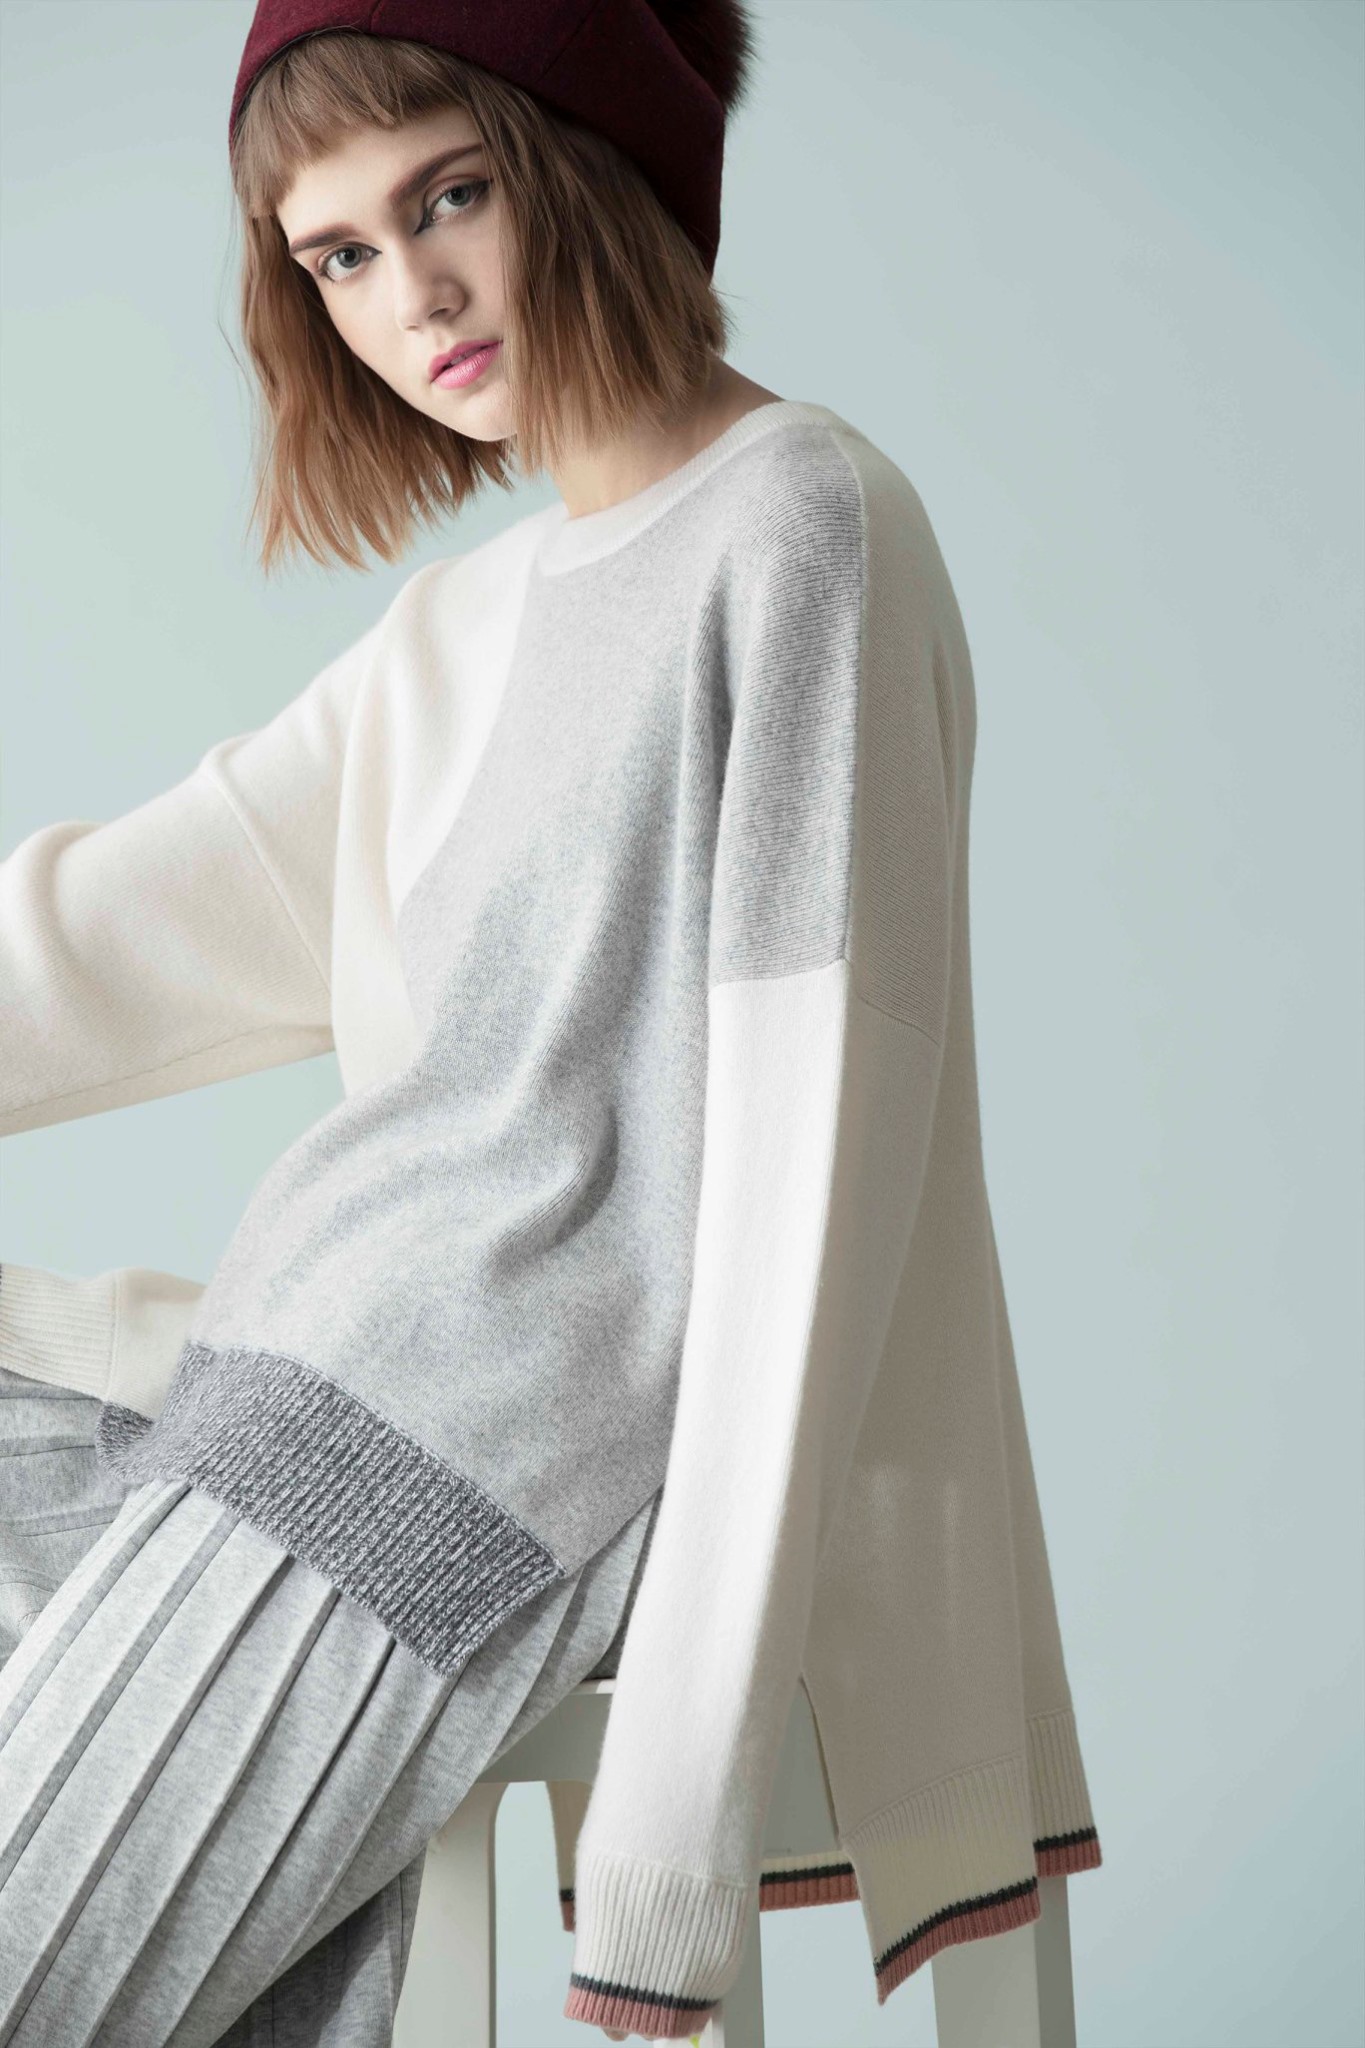 【Enrich Layering With Colourblock Chic】貫徹Atsuro Tayama富藝術感且前衛的風格，設計師巧妙將拼色設計呈現於單品的不同位置，並結合不規則剪裁打造一系列柔軟舒適的羊毛混山羊絨上衣，讓您輕易配搭出時尚且層次豐富的秋冬造型。 更多Atsuro Tayama單品在Sidefame網店發售﹕